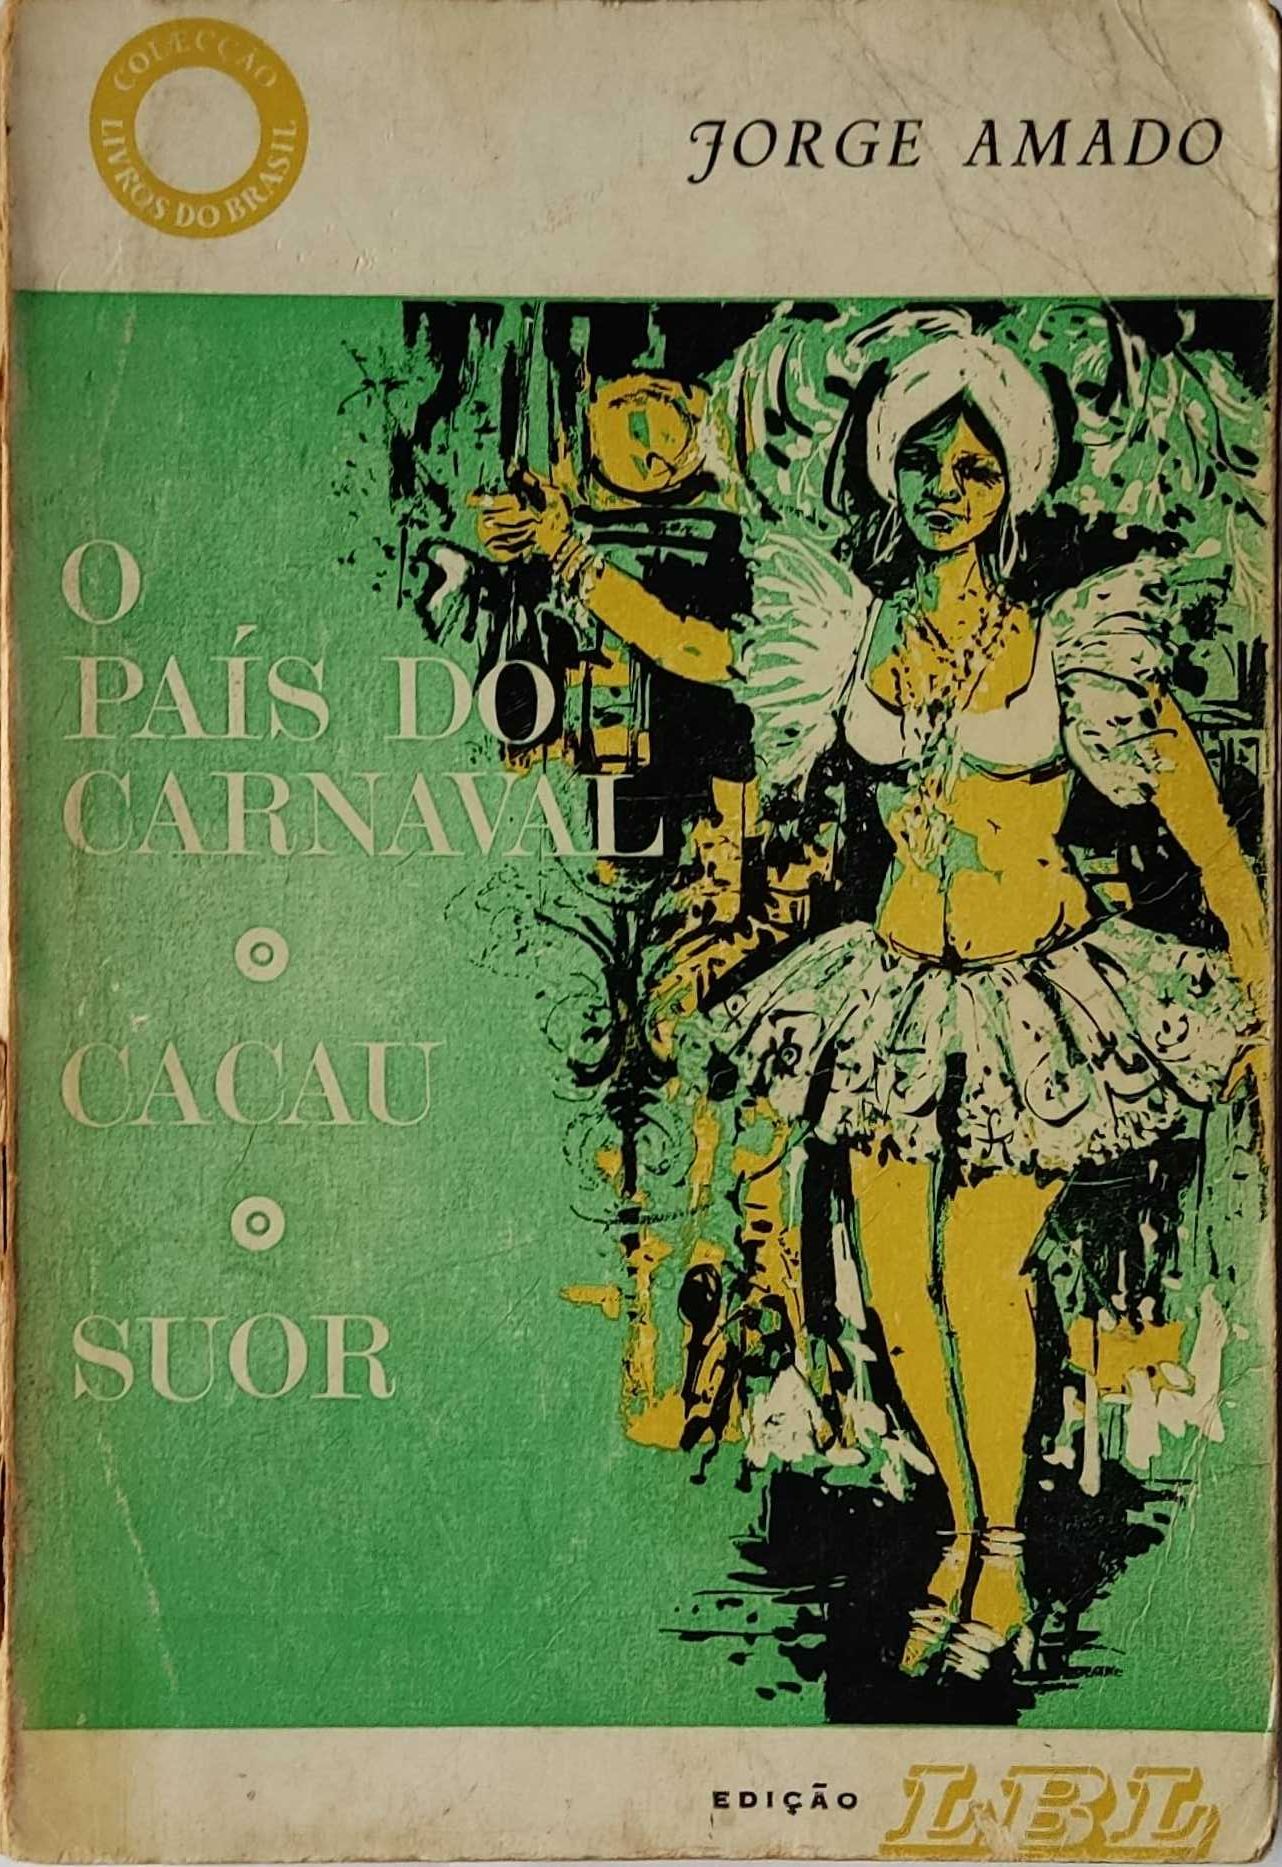 Livro  Ref Cx B - O Pais do Carnaval - Cacau - Suor - Jorge Amado